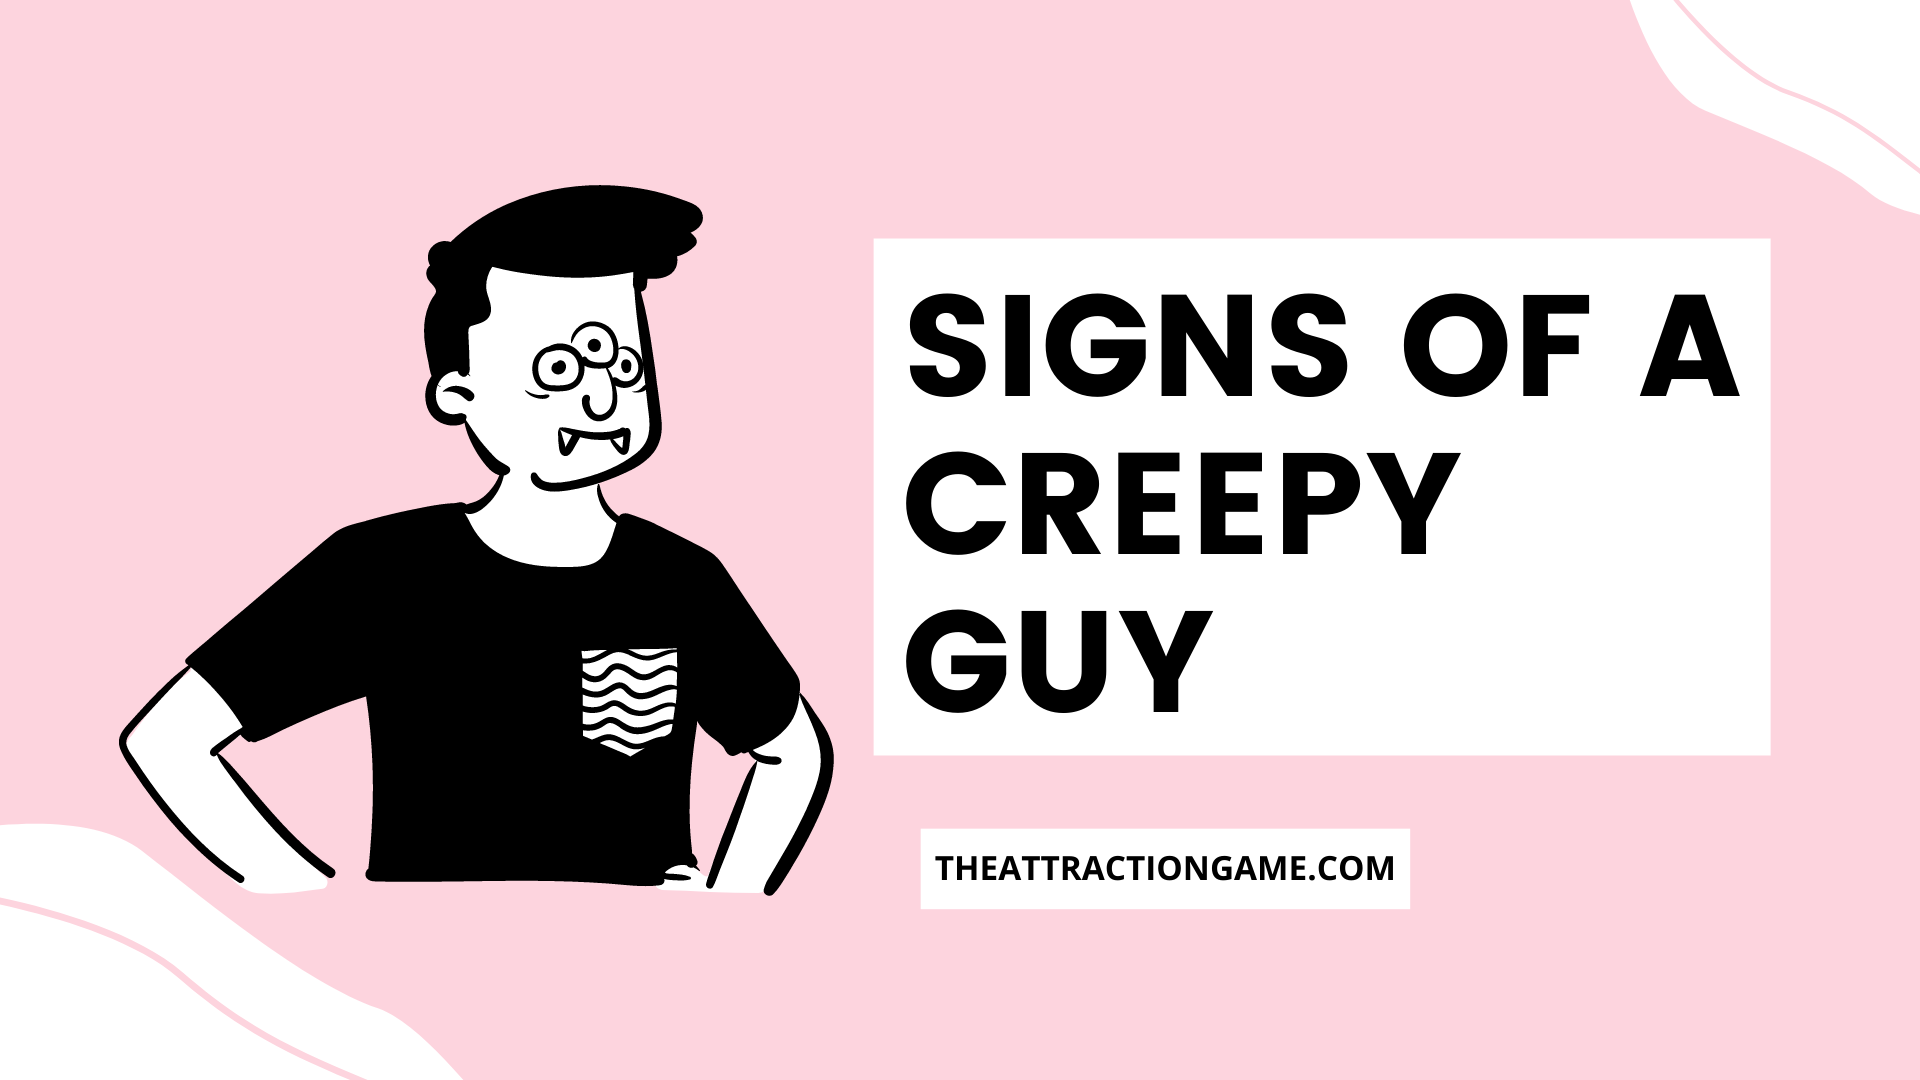 creepy guy, creepy guy signs, signs of a creepy guy, what are the signs of a creepy guy